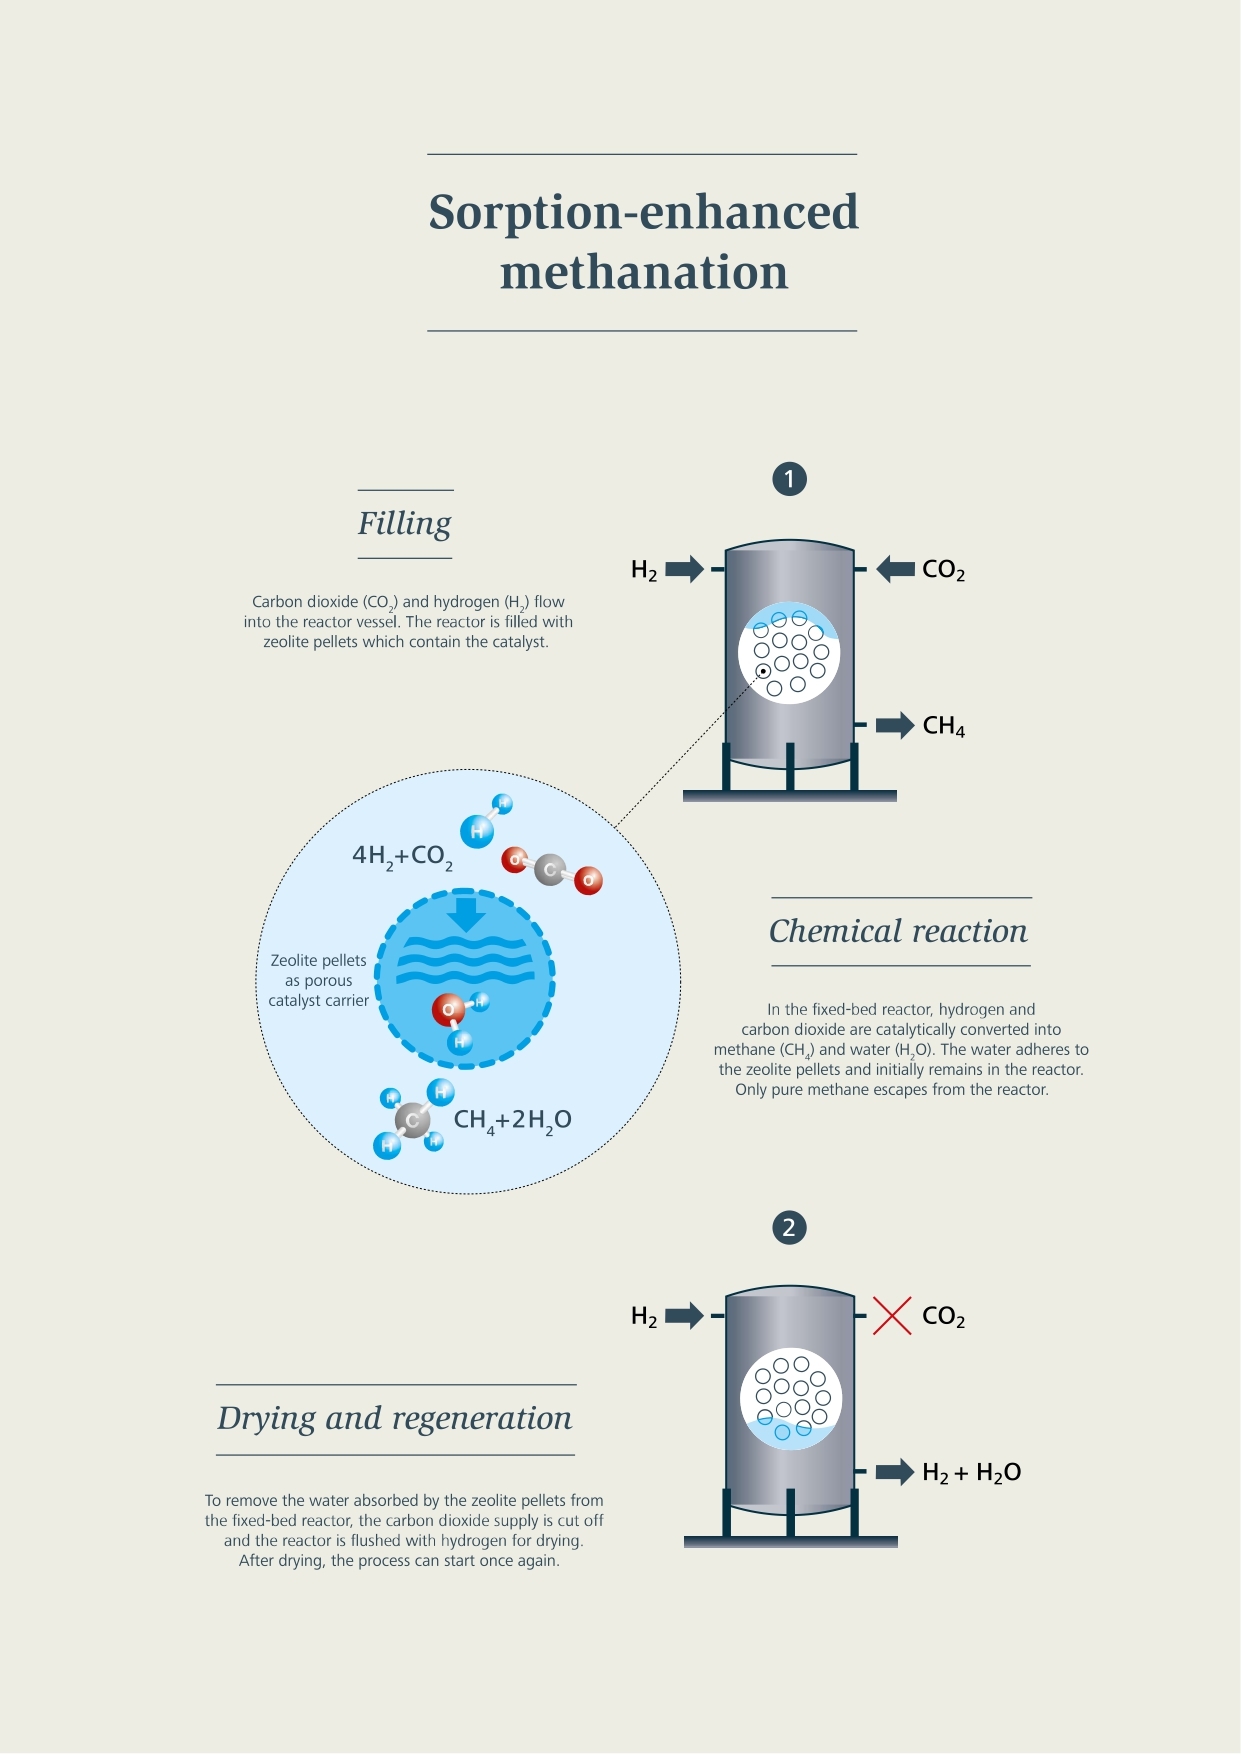 Syntetyczny metan: proces metanizacji z absorpcją: napełnianie, reakcja chemiczna, suszenie i regeneracja itp.